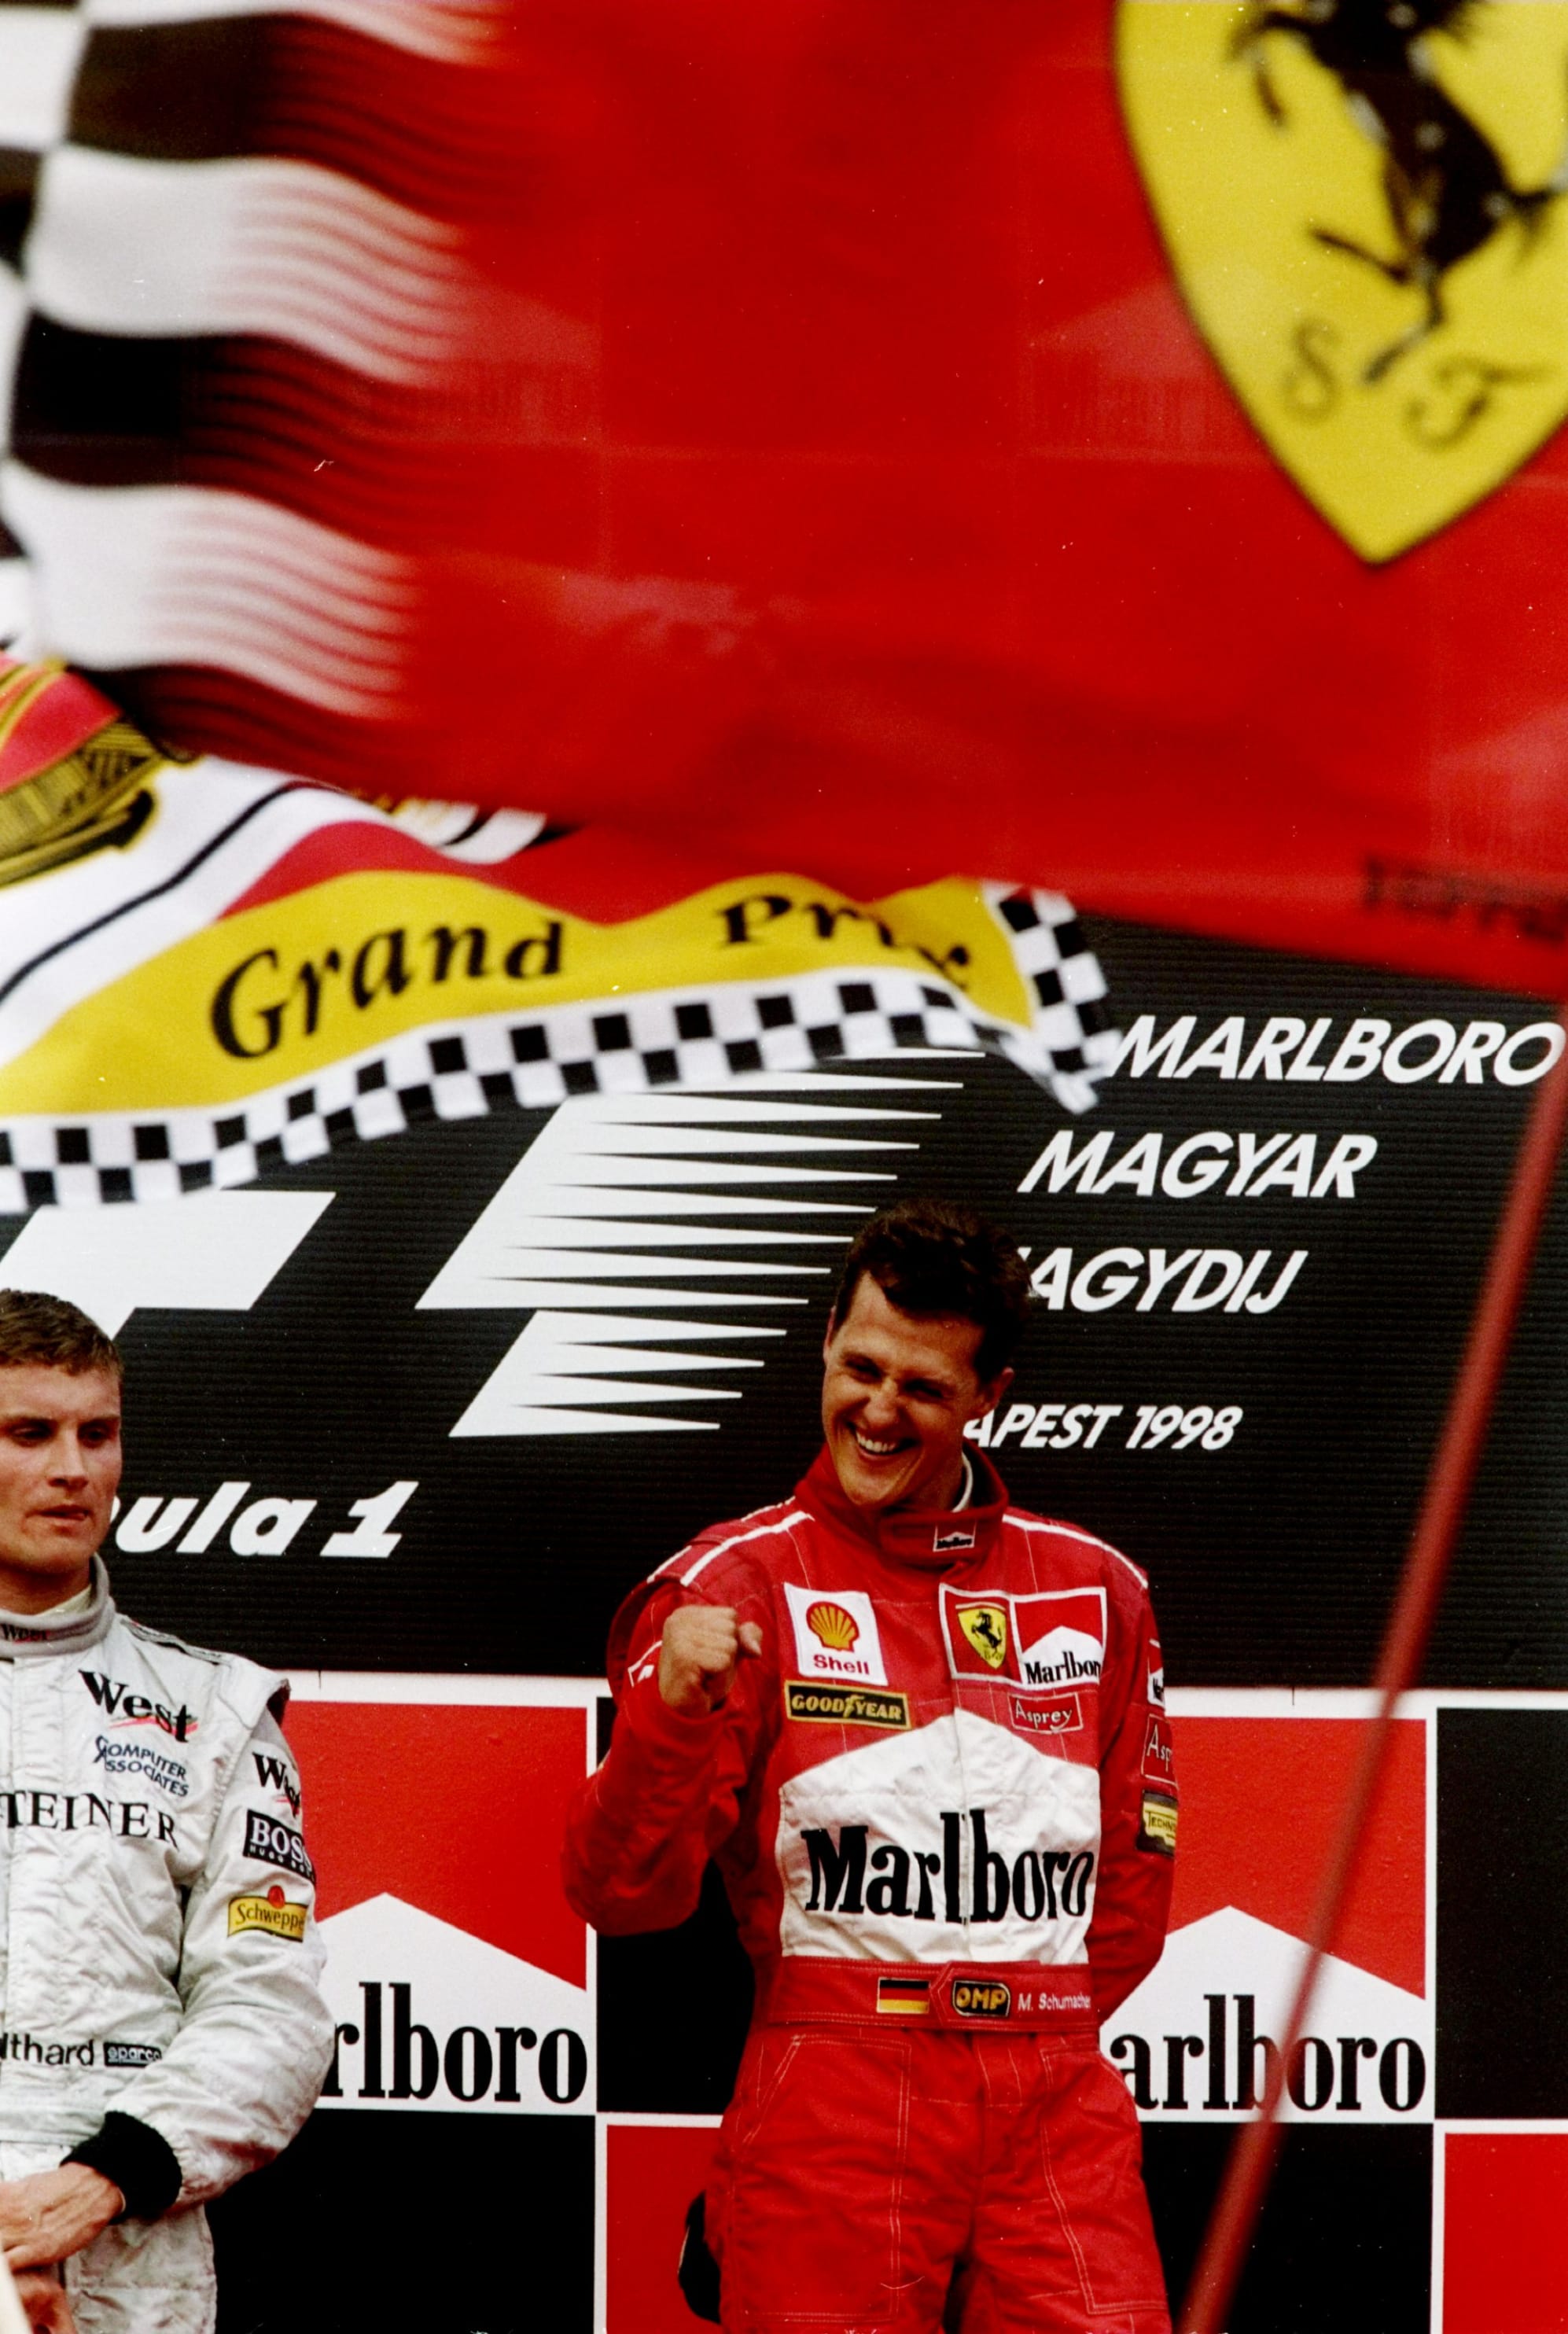 Классическая победа Шумахера в «Феррари»: отыграл 25 секунд за 19 кругов и вынес более быстрый «Макларен» на Гран-при Венгрии-98